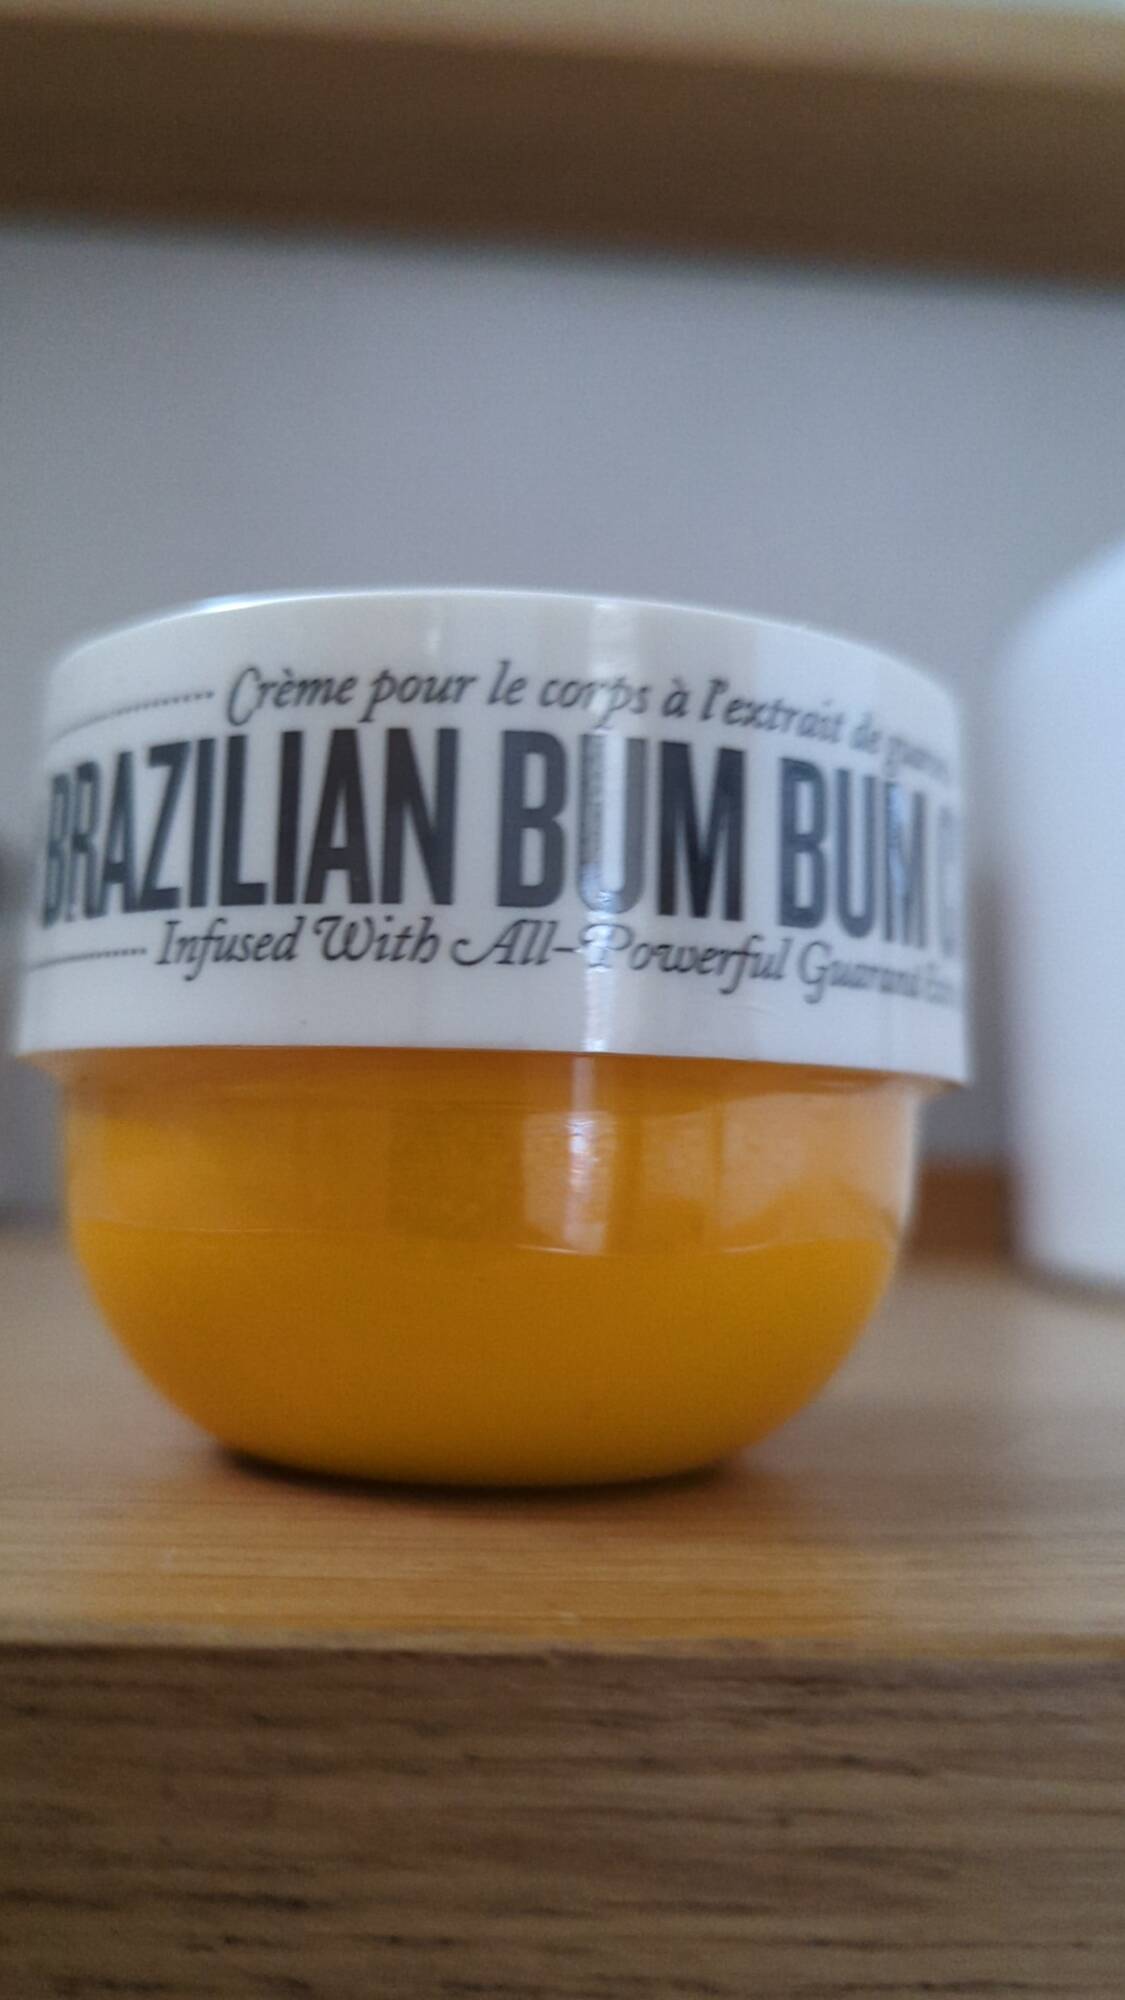 SOL DE JANEIRO - Brazilian bum bum cream - Crème pour le corps à l'extrait de guarana